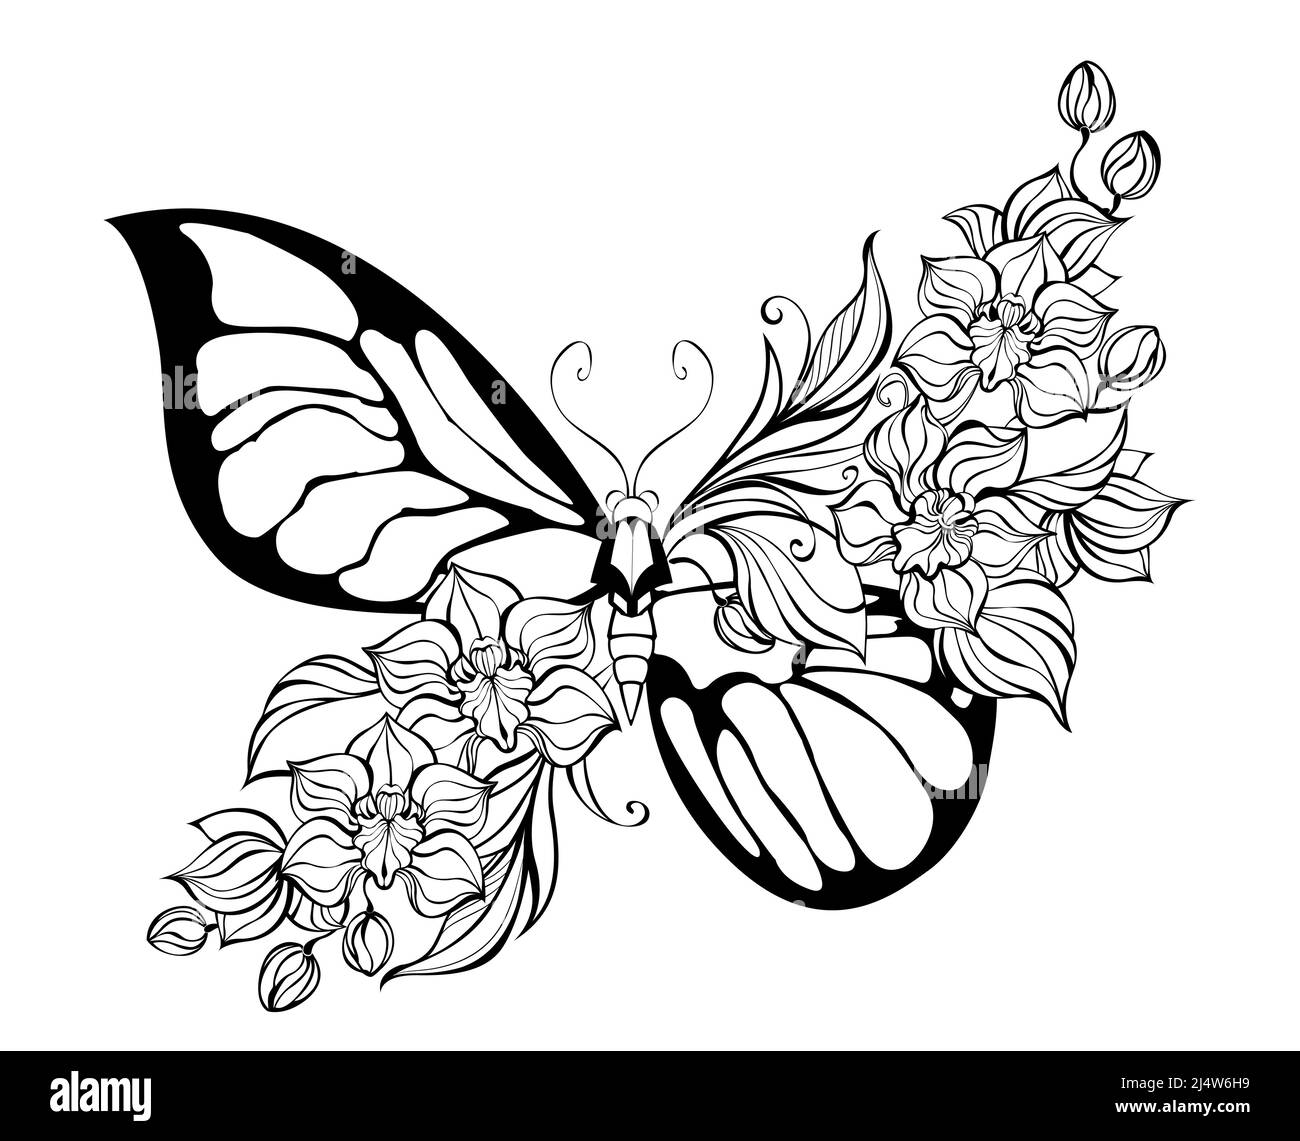 Contorno, estilizada, mariposa artística, decorada con orquídeas exóticas sobre fondo blanco. Libro para colorear. Ilustración del Vector